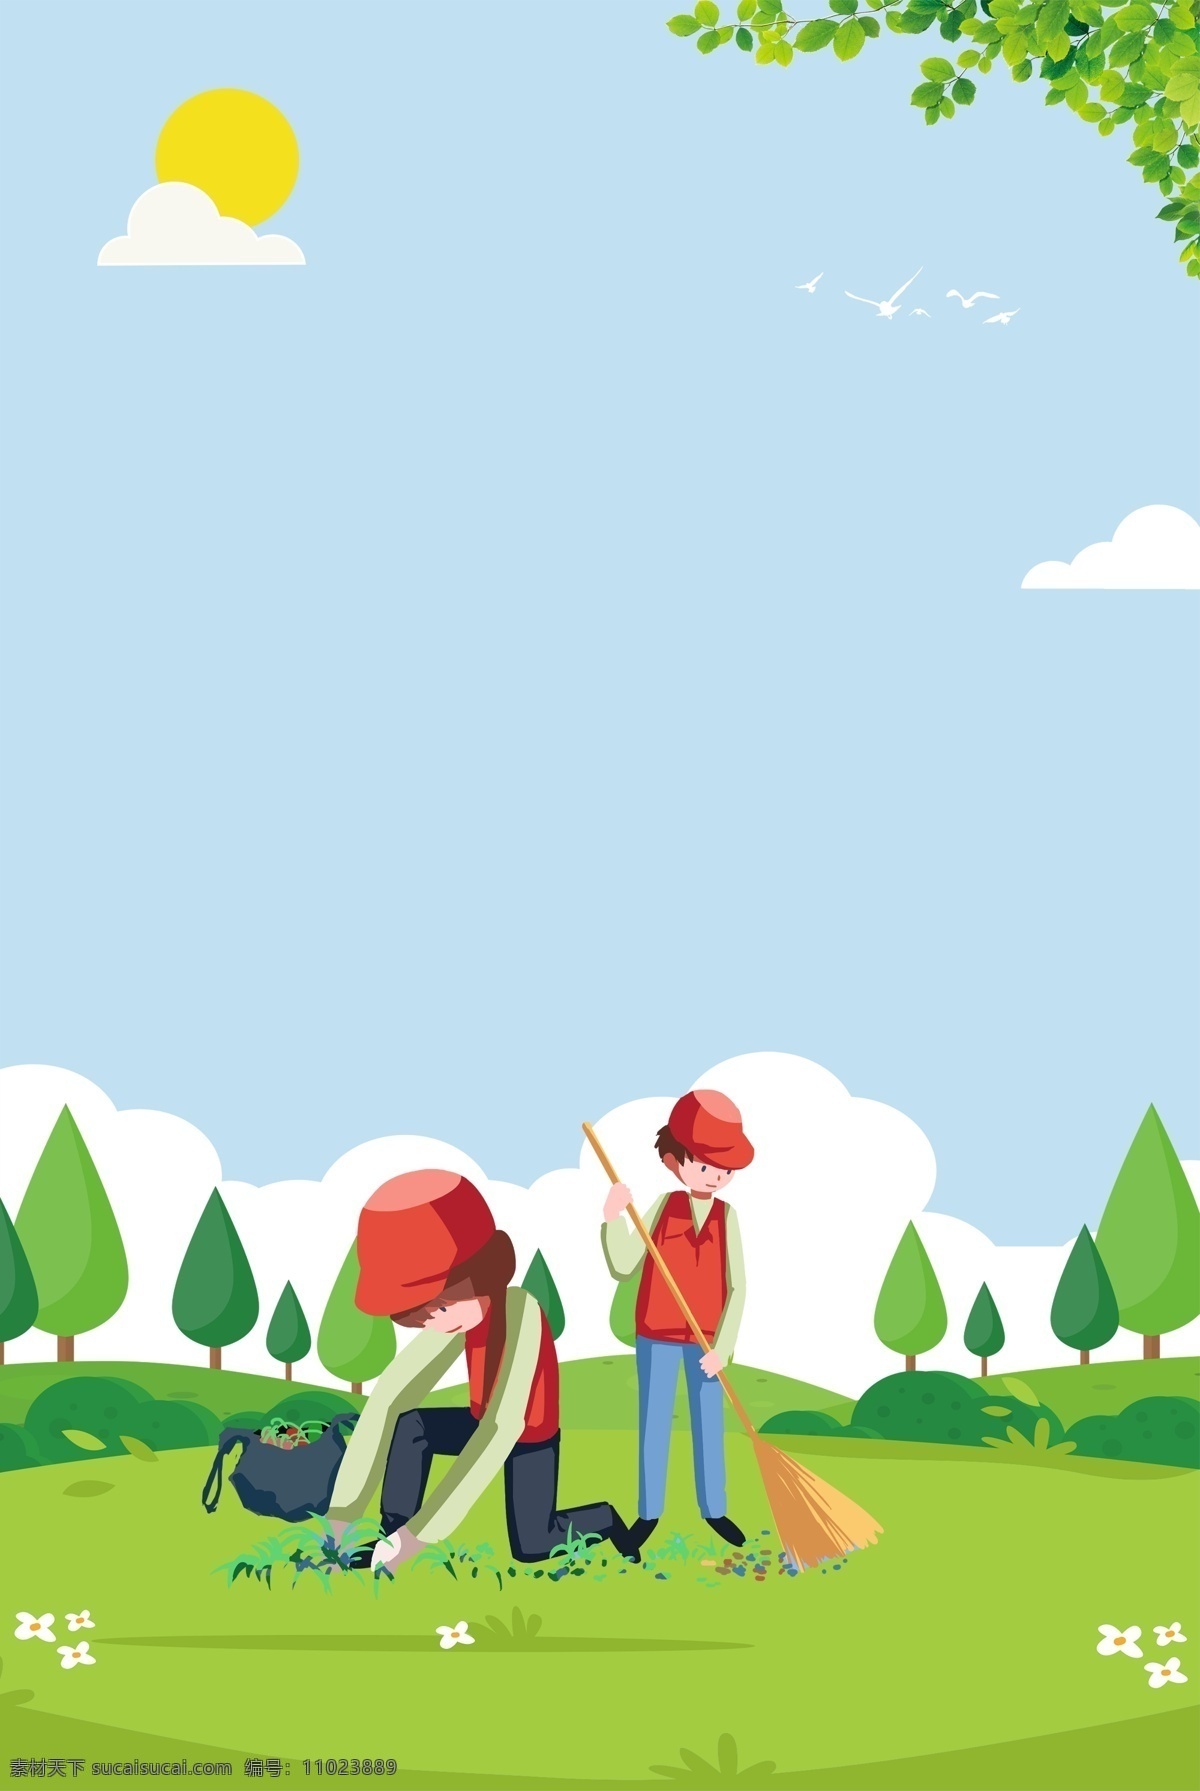 国际 志愿者 日 草地 清理 垃圾 海报 国际志愿者日 志愿者日 关怀 帮助 卡通 清理垃圾 树木 太阳 叶子